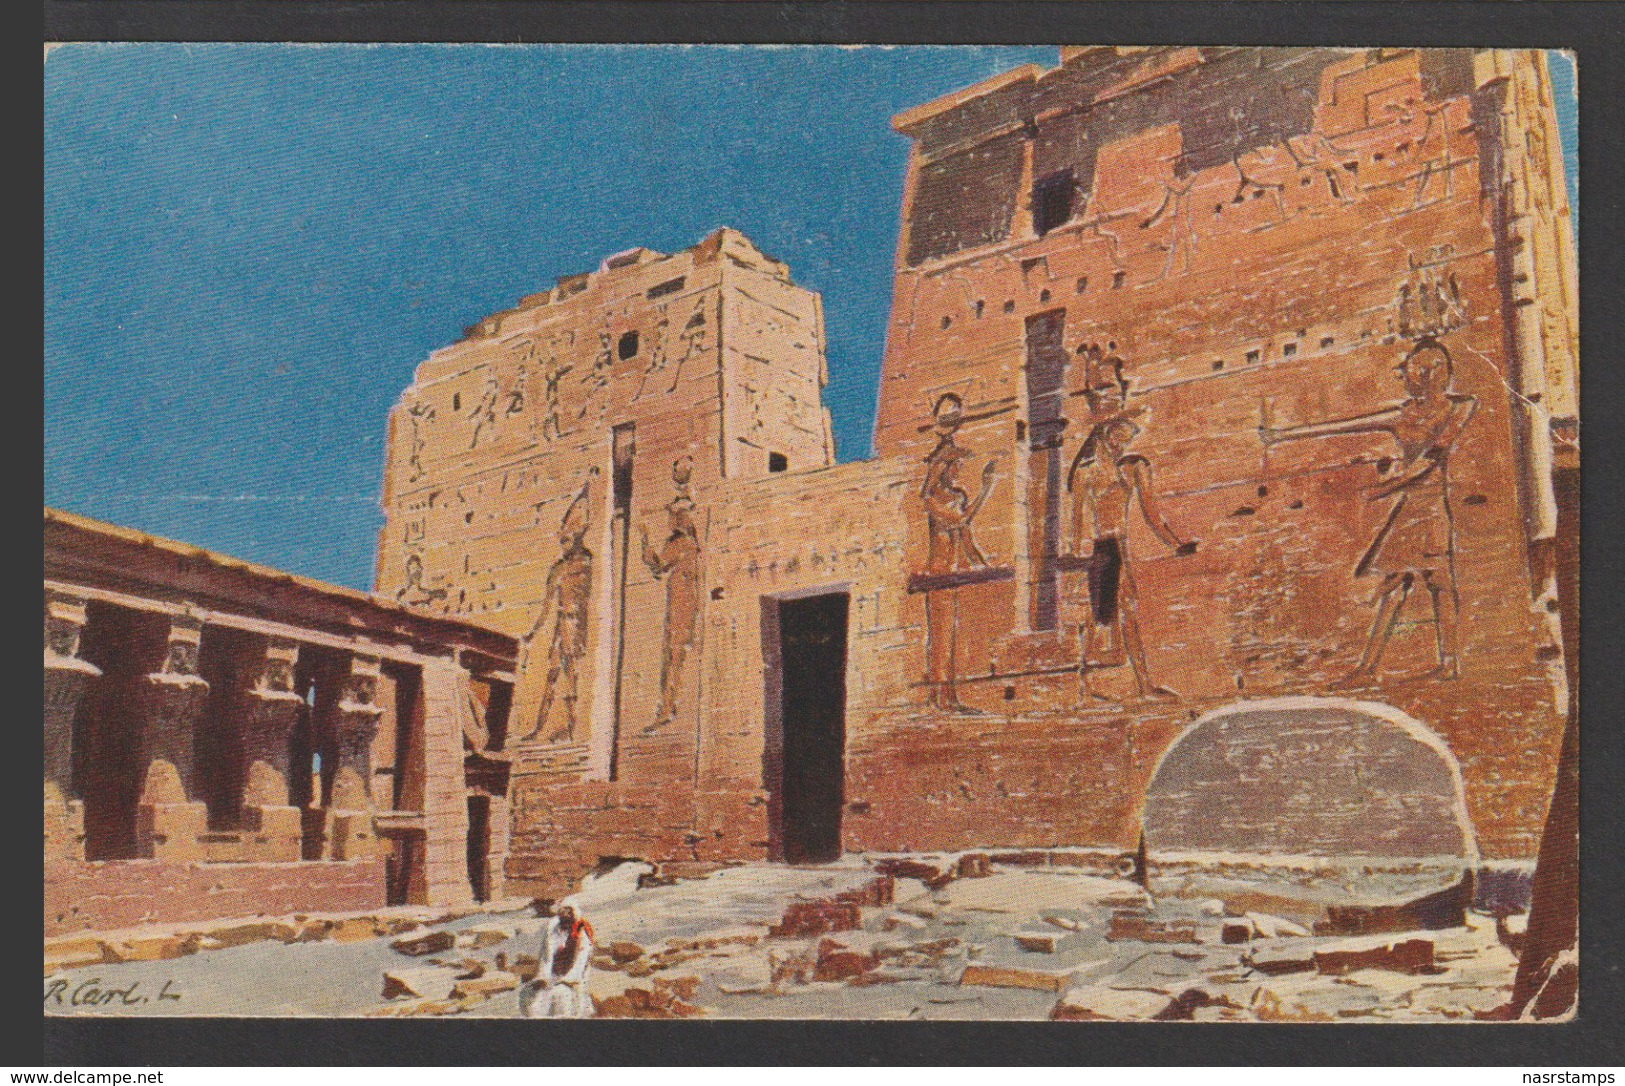 Egypt - RARE - Vintage Post Card - Philae Temple - Storia Postale